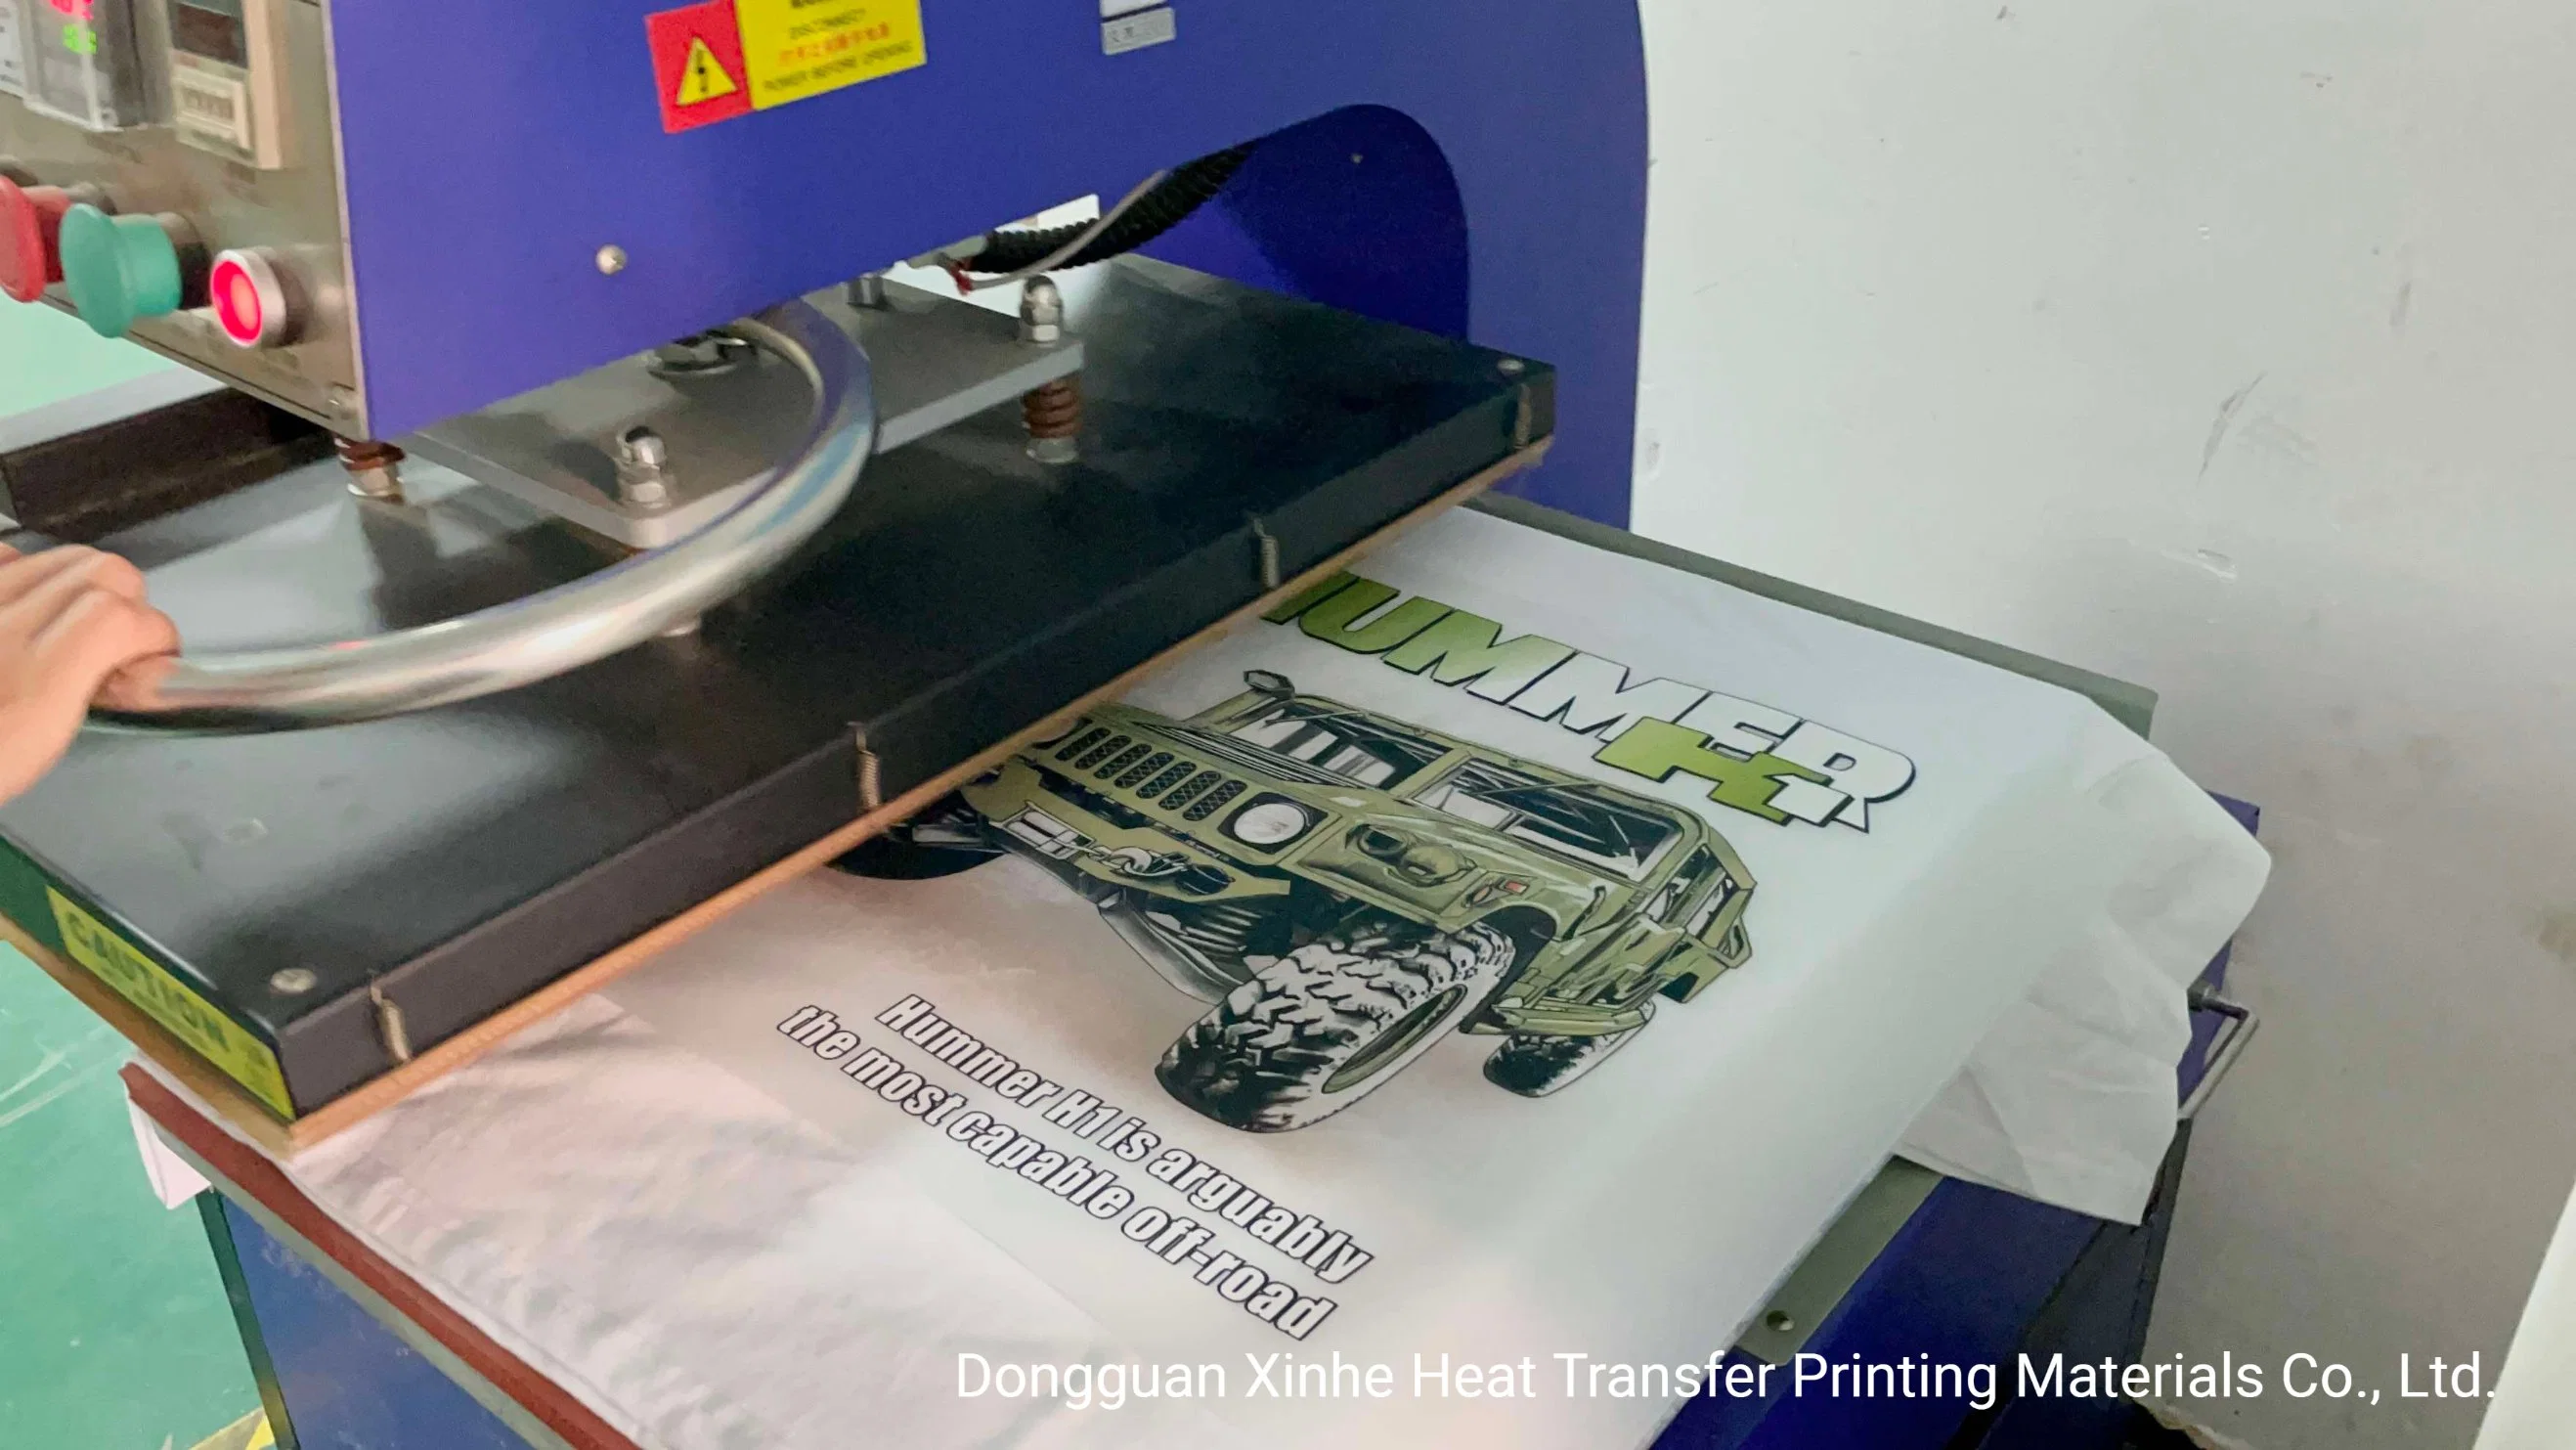 Transferência a quente de imagem de impressão em filme para impressão têxtil em camisetas e roupas com revestimento de liberação de calor.